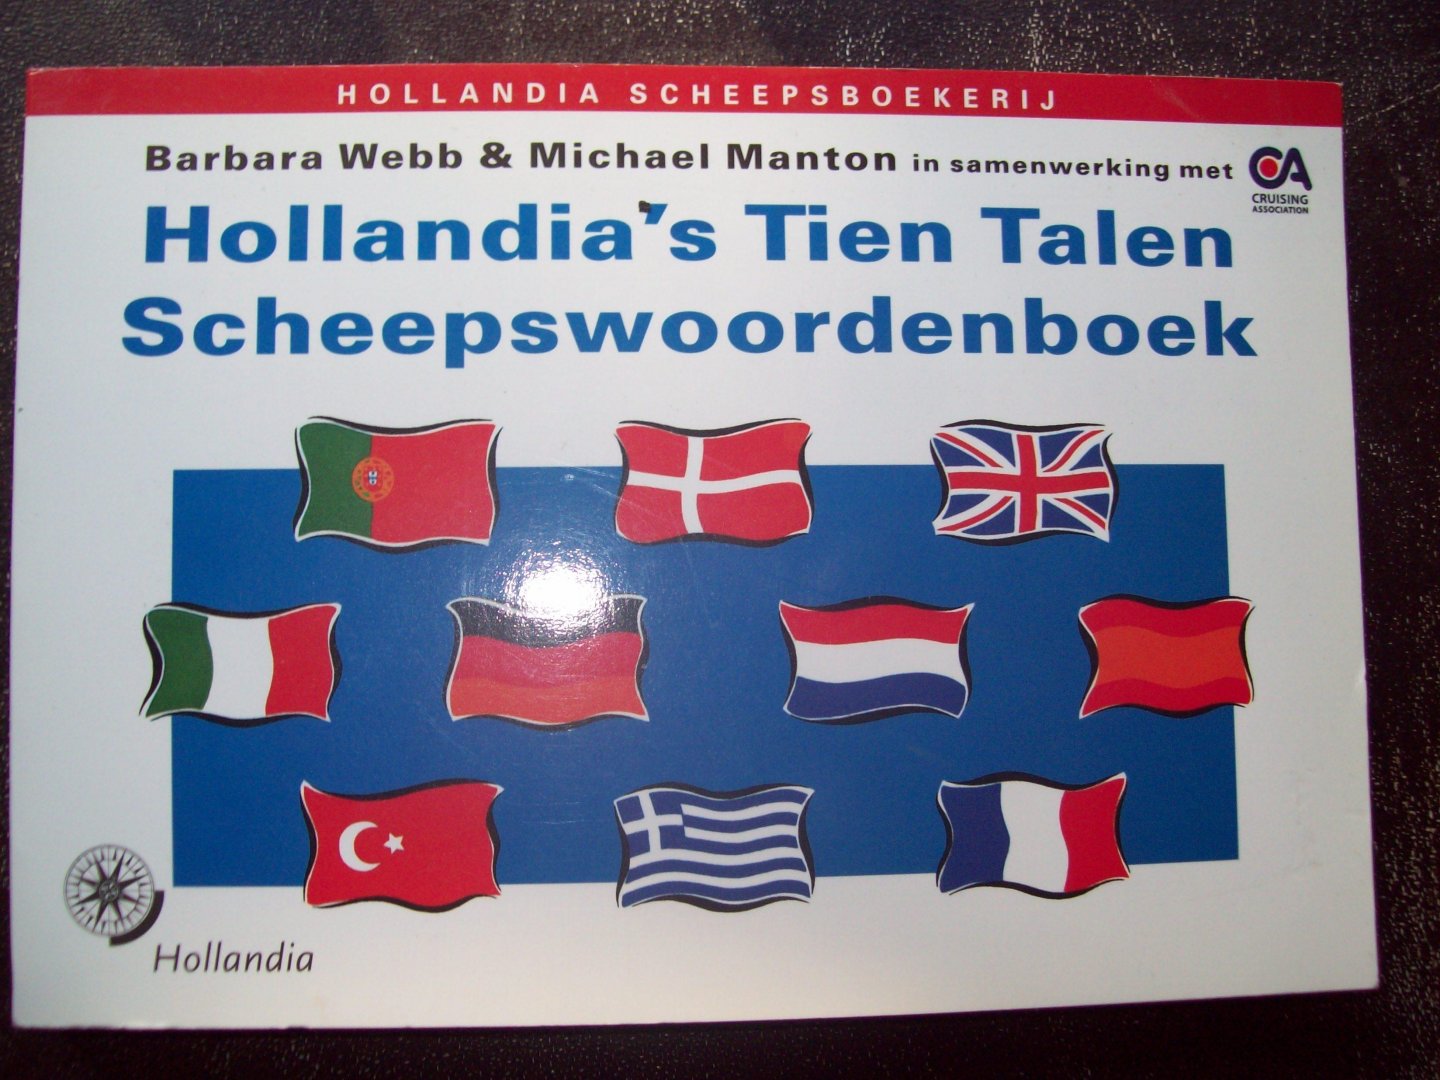 Barbara Webb & Michael Manton - Hollandia's Tien Talen Scheepswoordenboek.